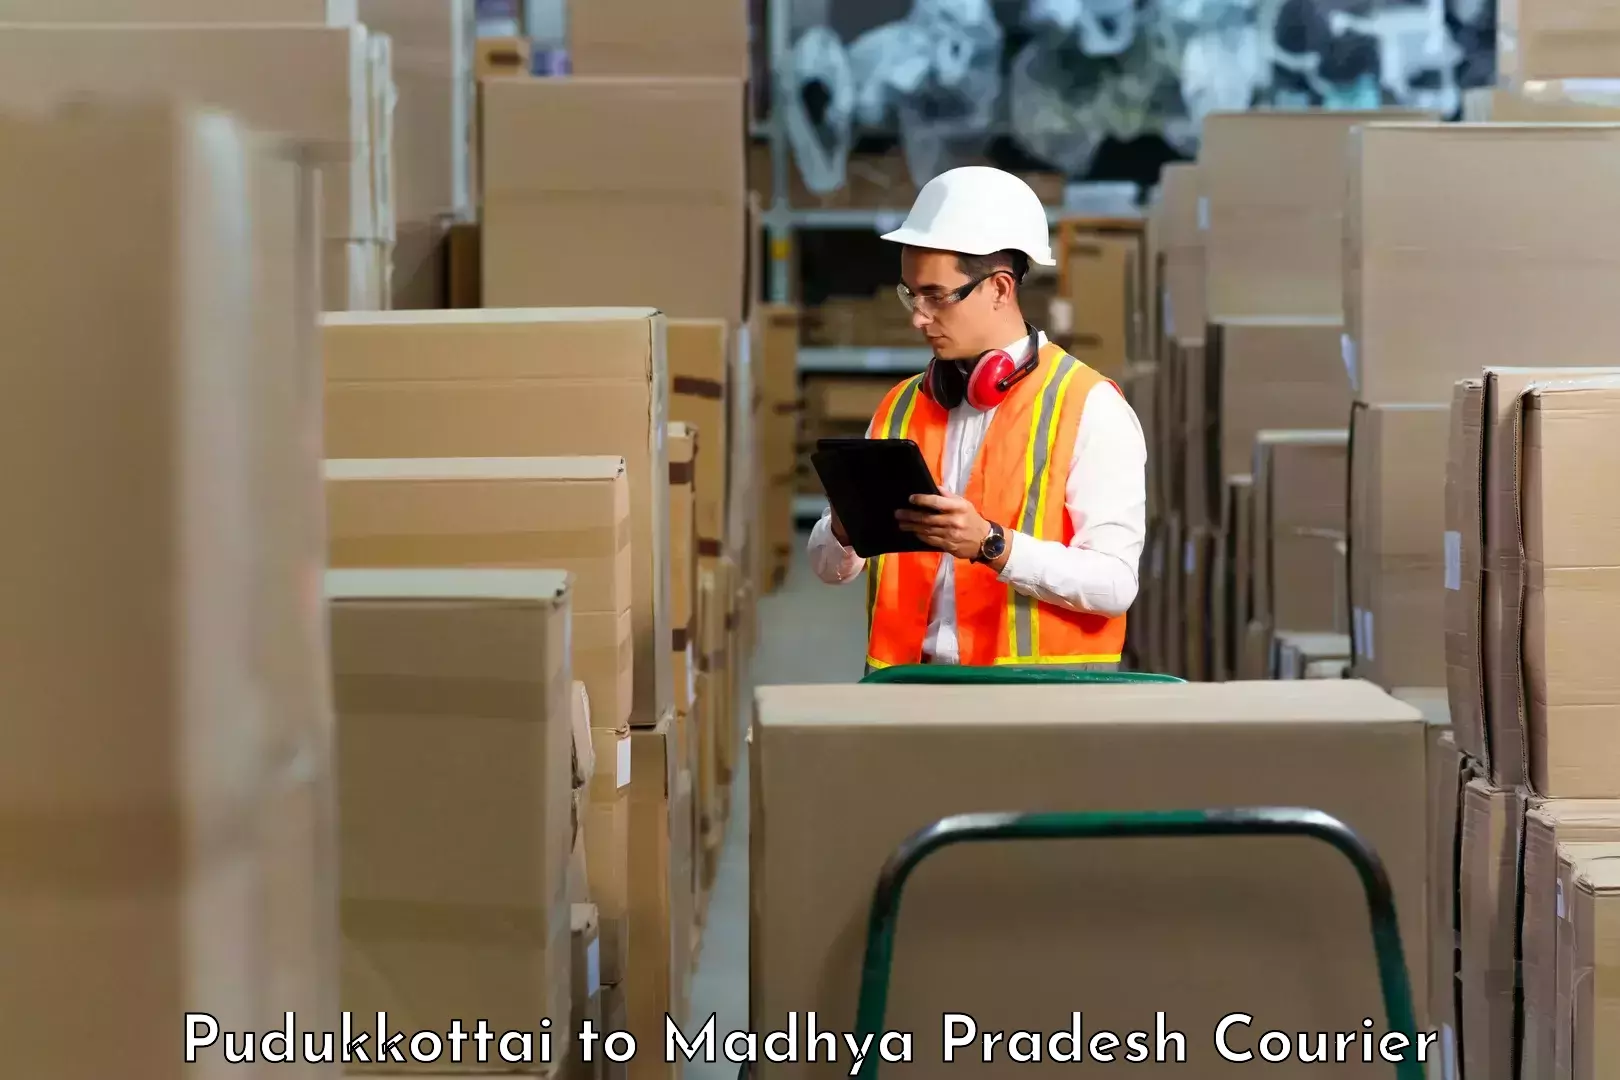 Supply chain efficiency Pudukkottai to Mandla